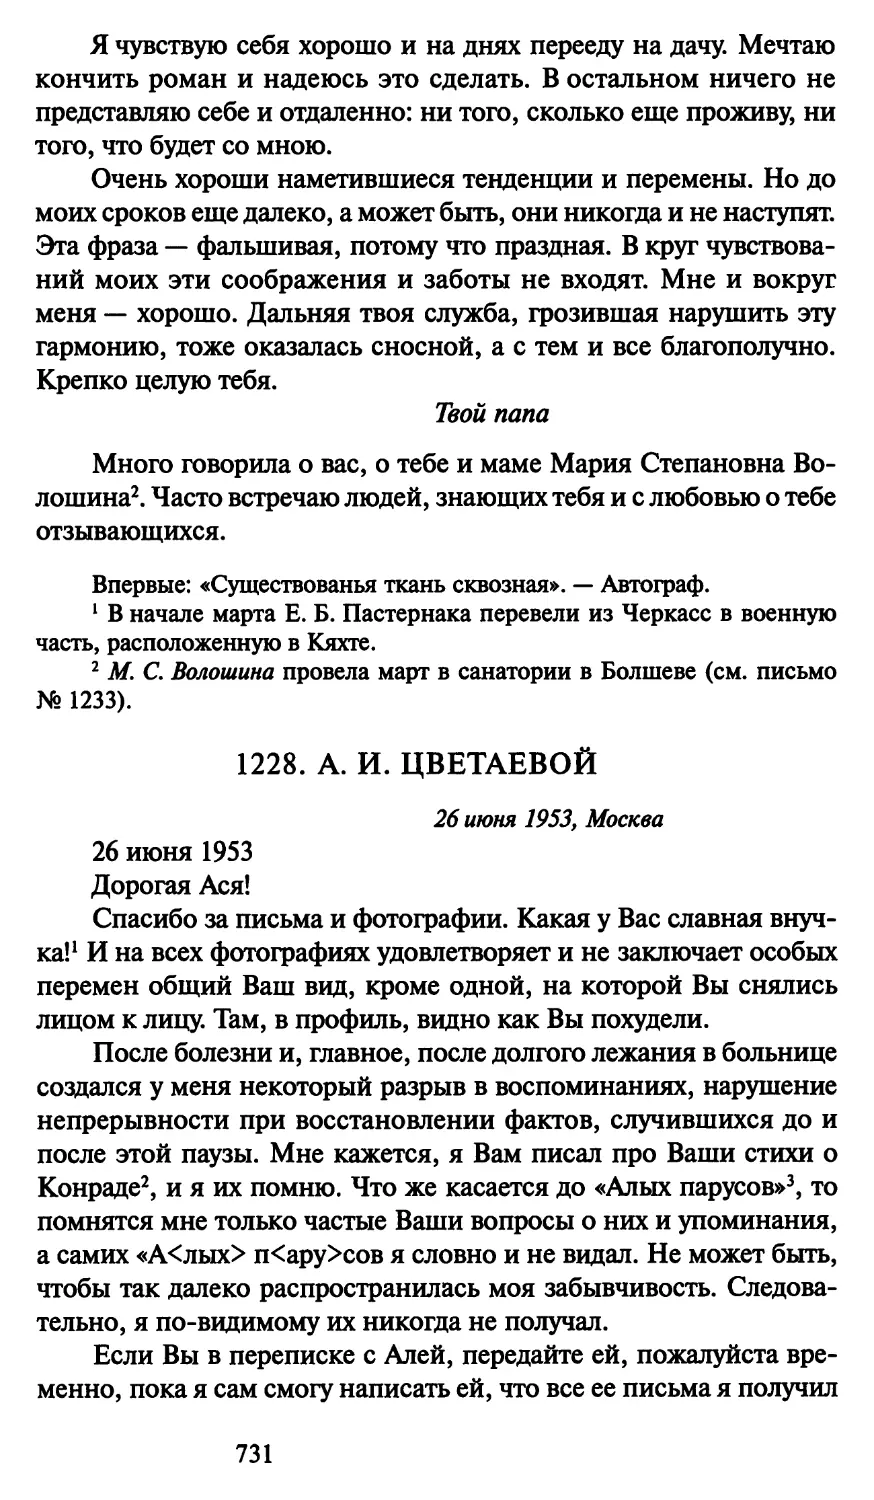 1228. А. И. Цветаевой 26 июня 1953